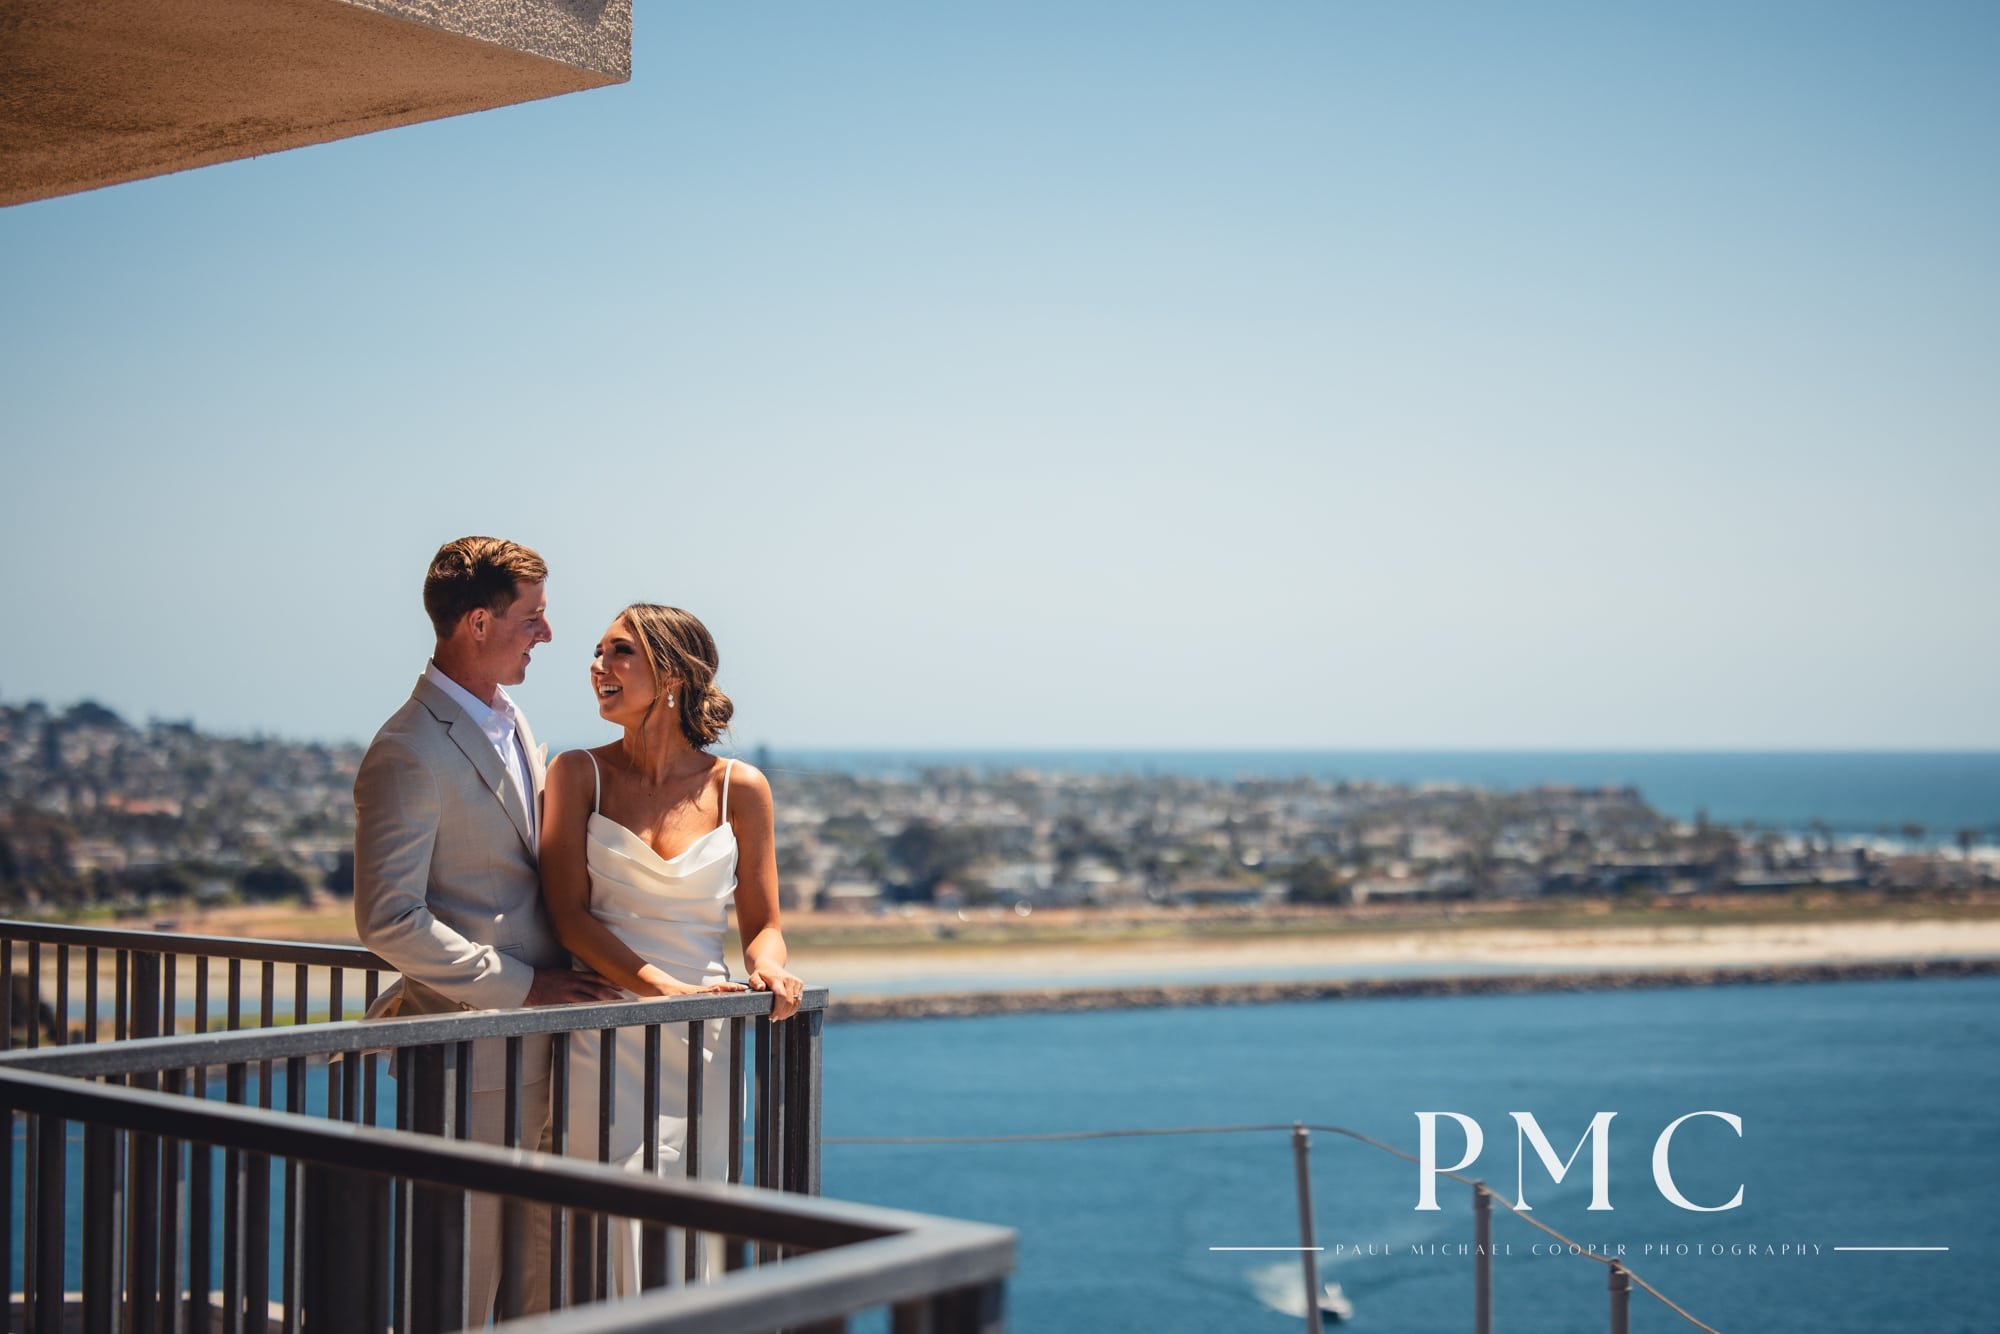 Madison + Stephen | A Dreamy Bayside Summer Wedding | San Diego, CA